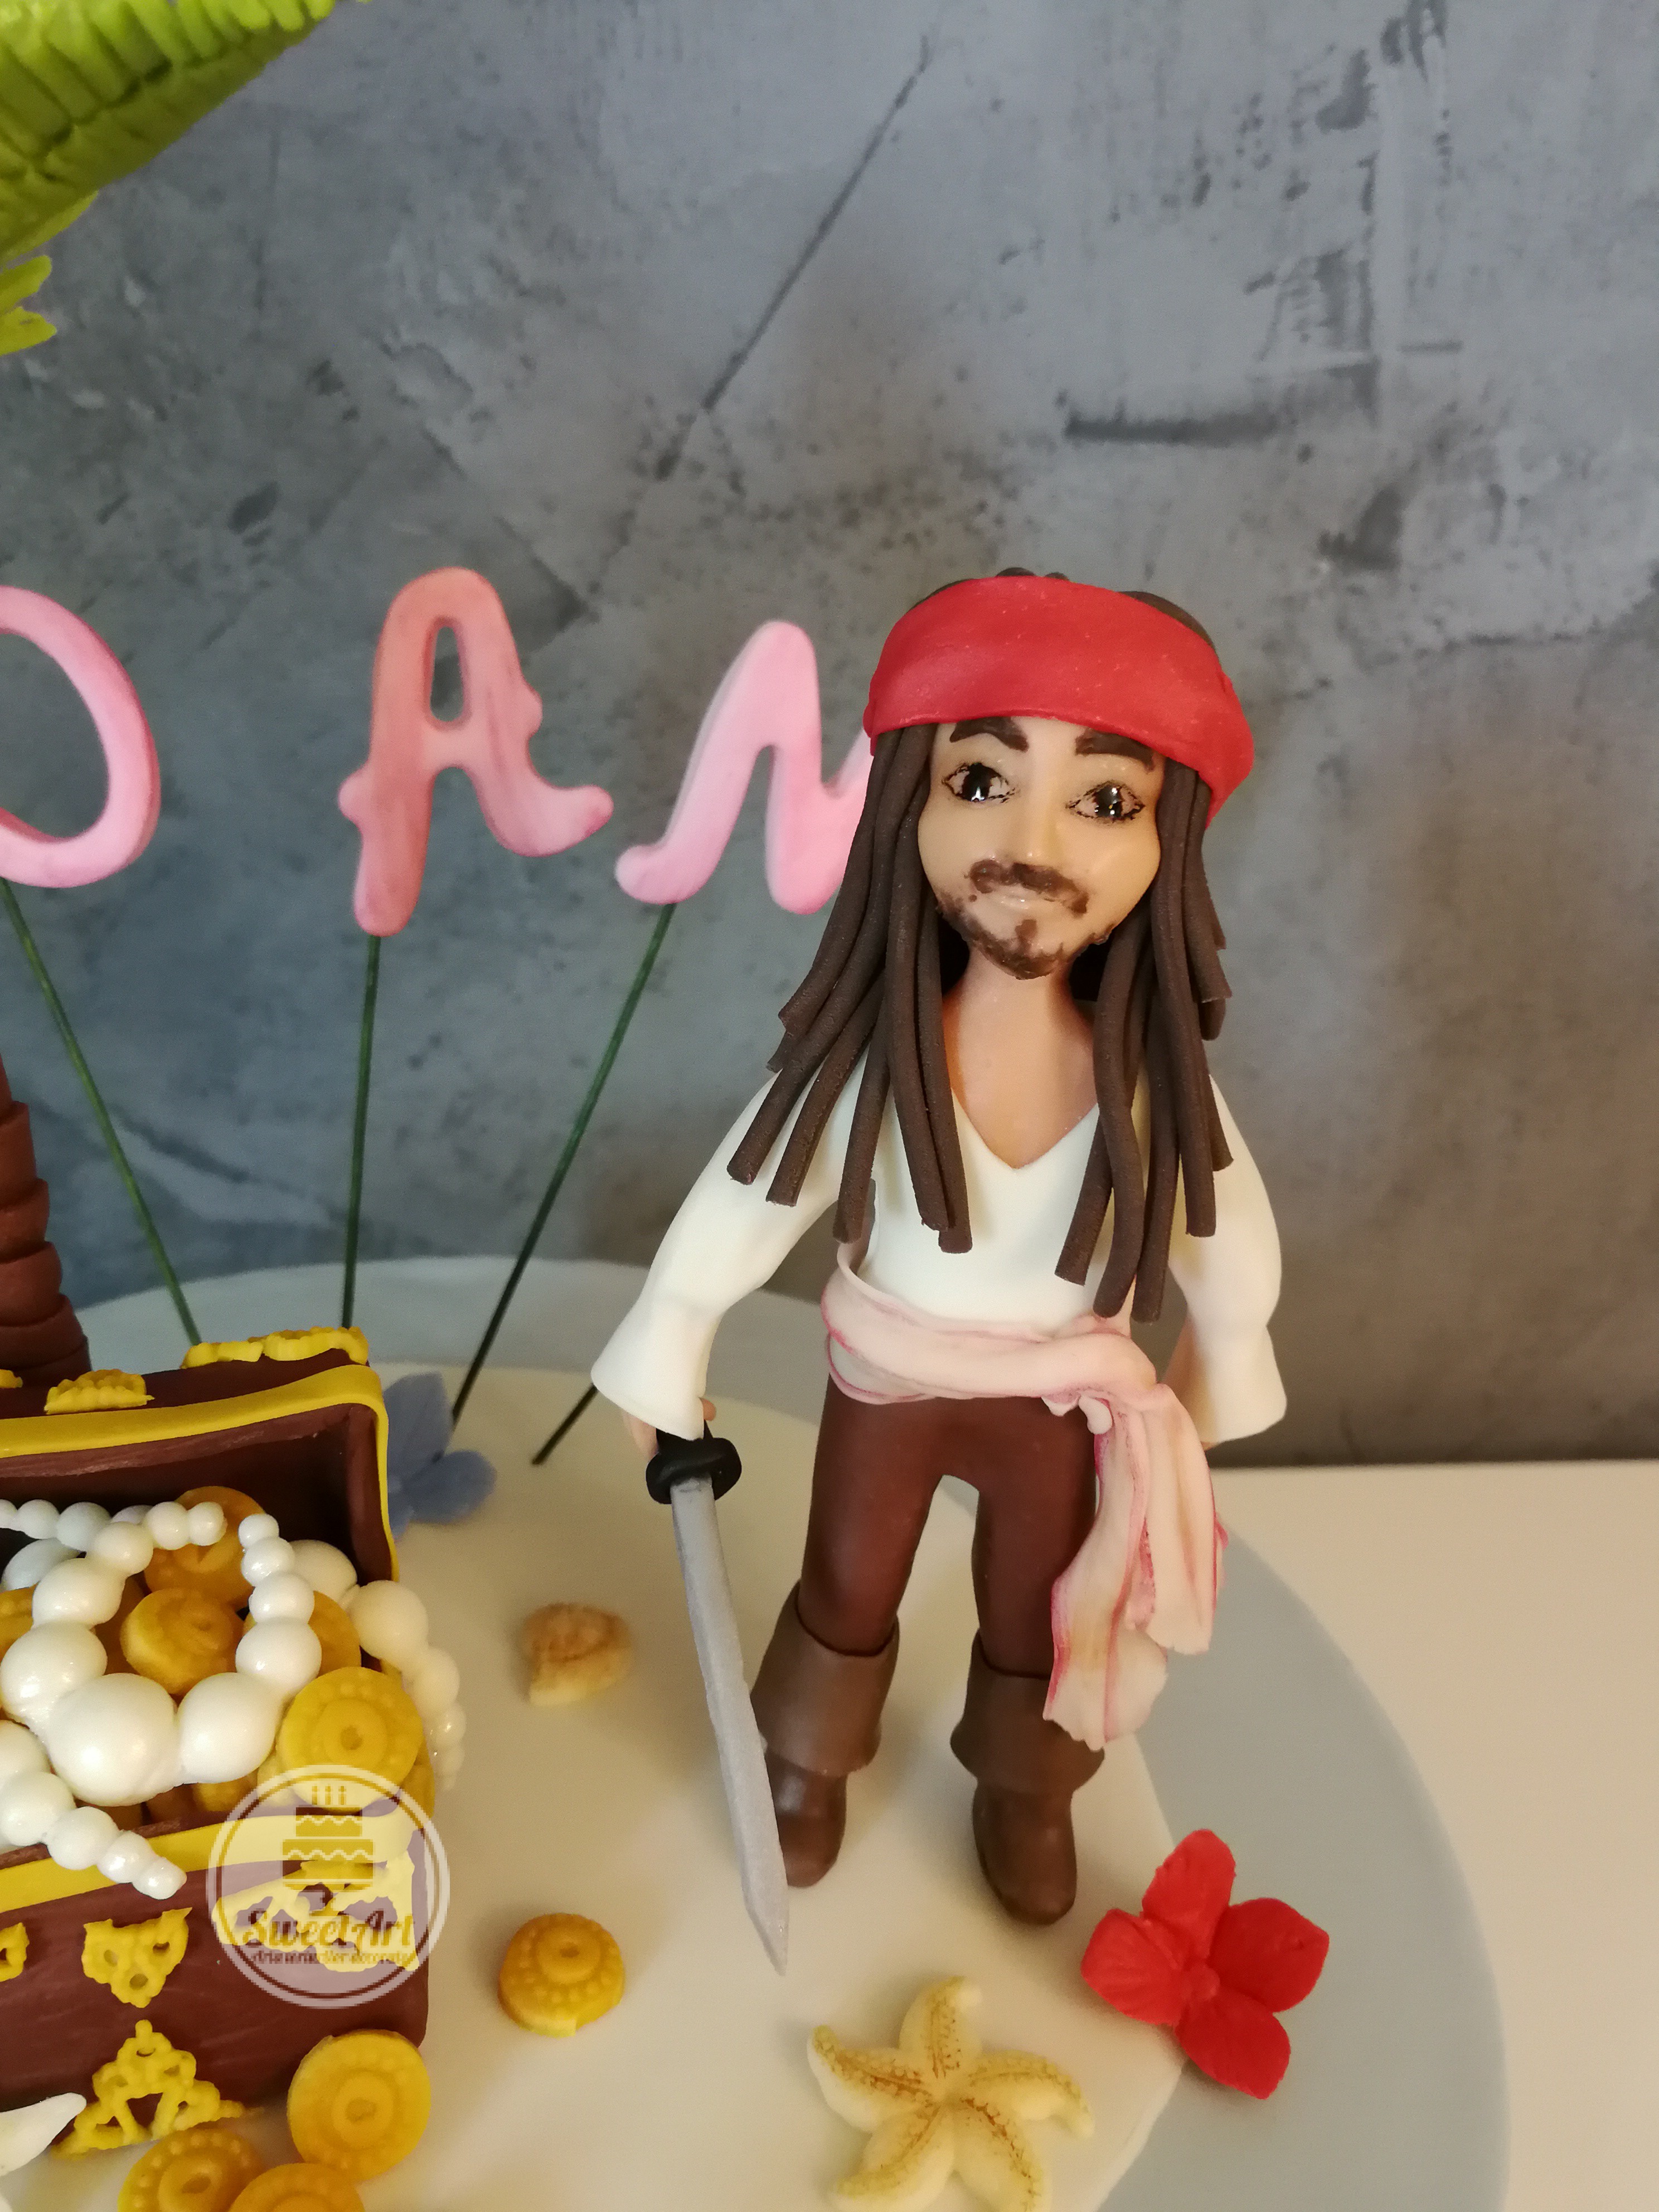 Jack Sparrow - Pirații din Caraibe - Pirates of Caribbean: insulă, palmier, cufăr cu comoară, monede, șiraguri perle, steluță de mare, flori tropicale roșii și roz, palmier pe insulă, melci spirală, scoici, nisip, tort bleu cu ivoyre